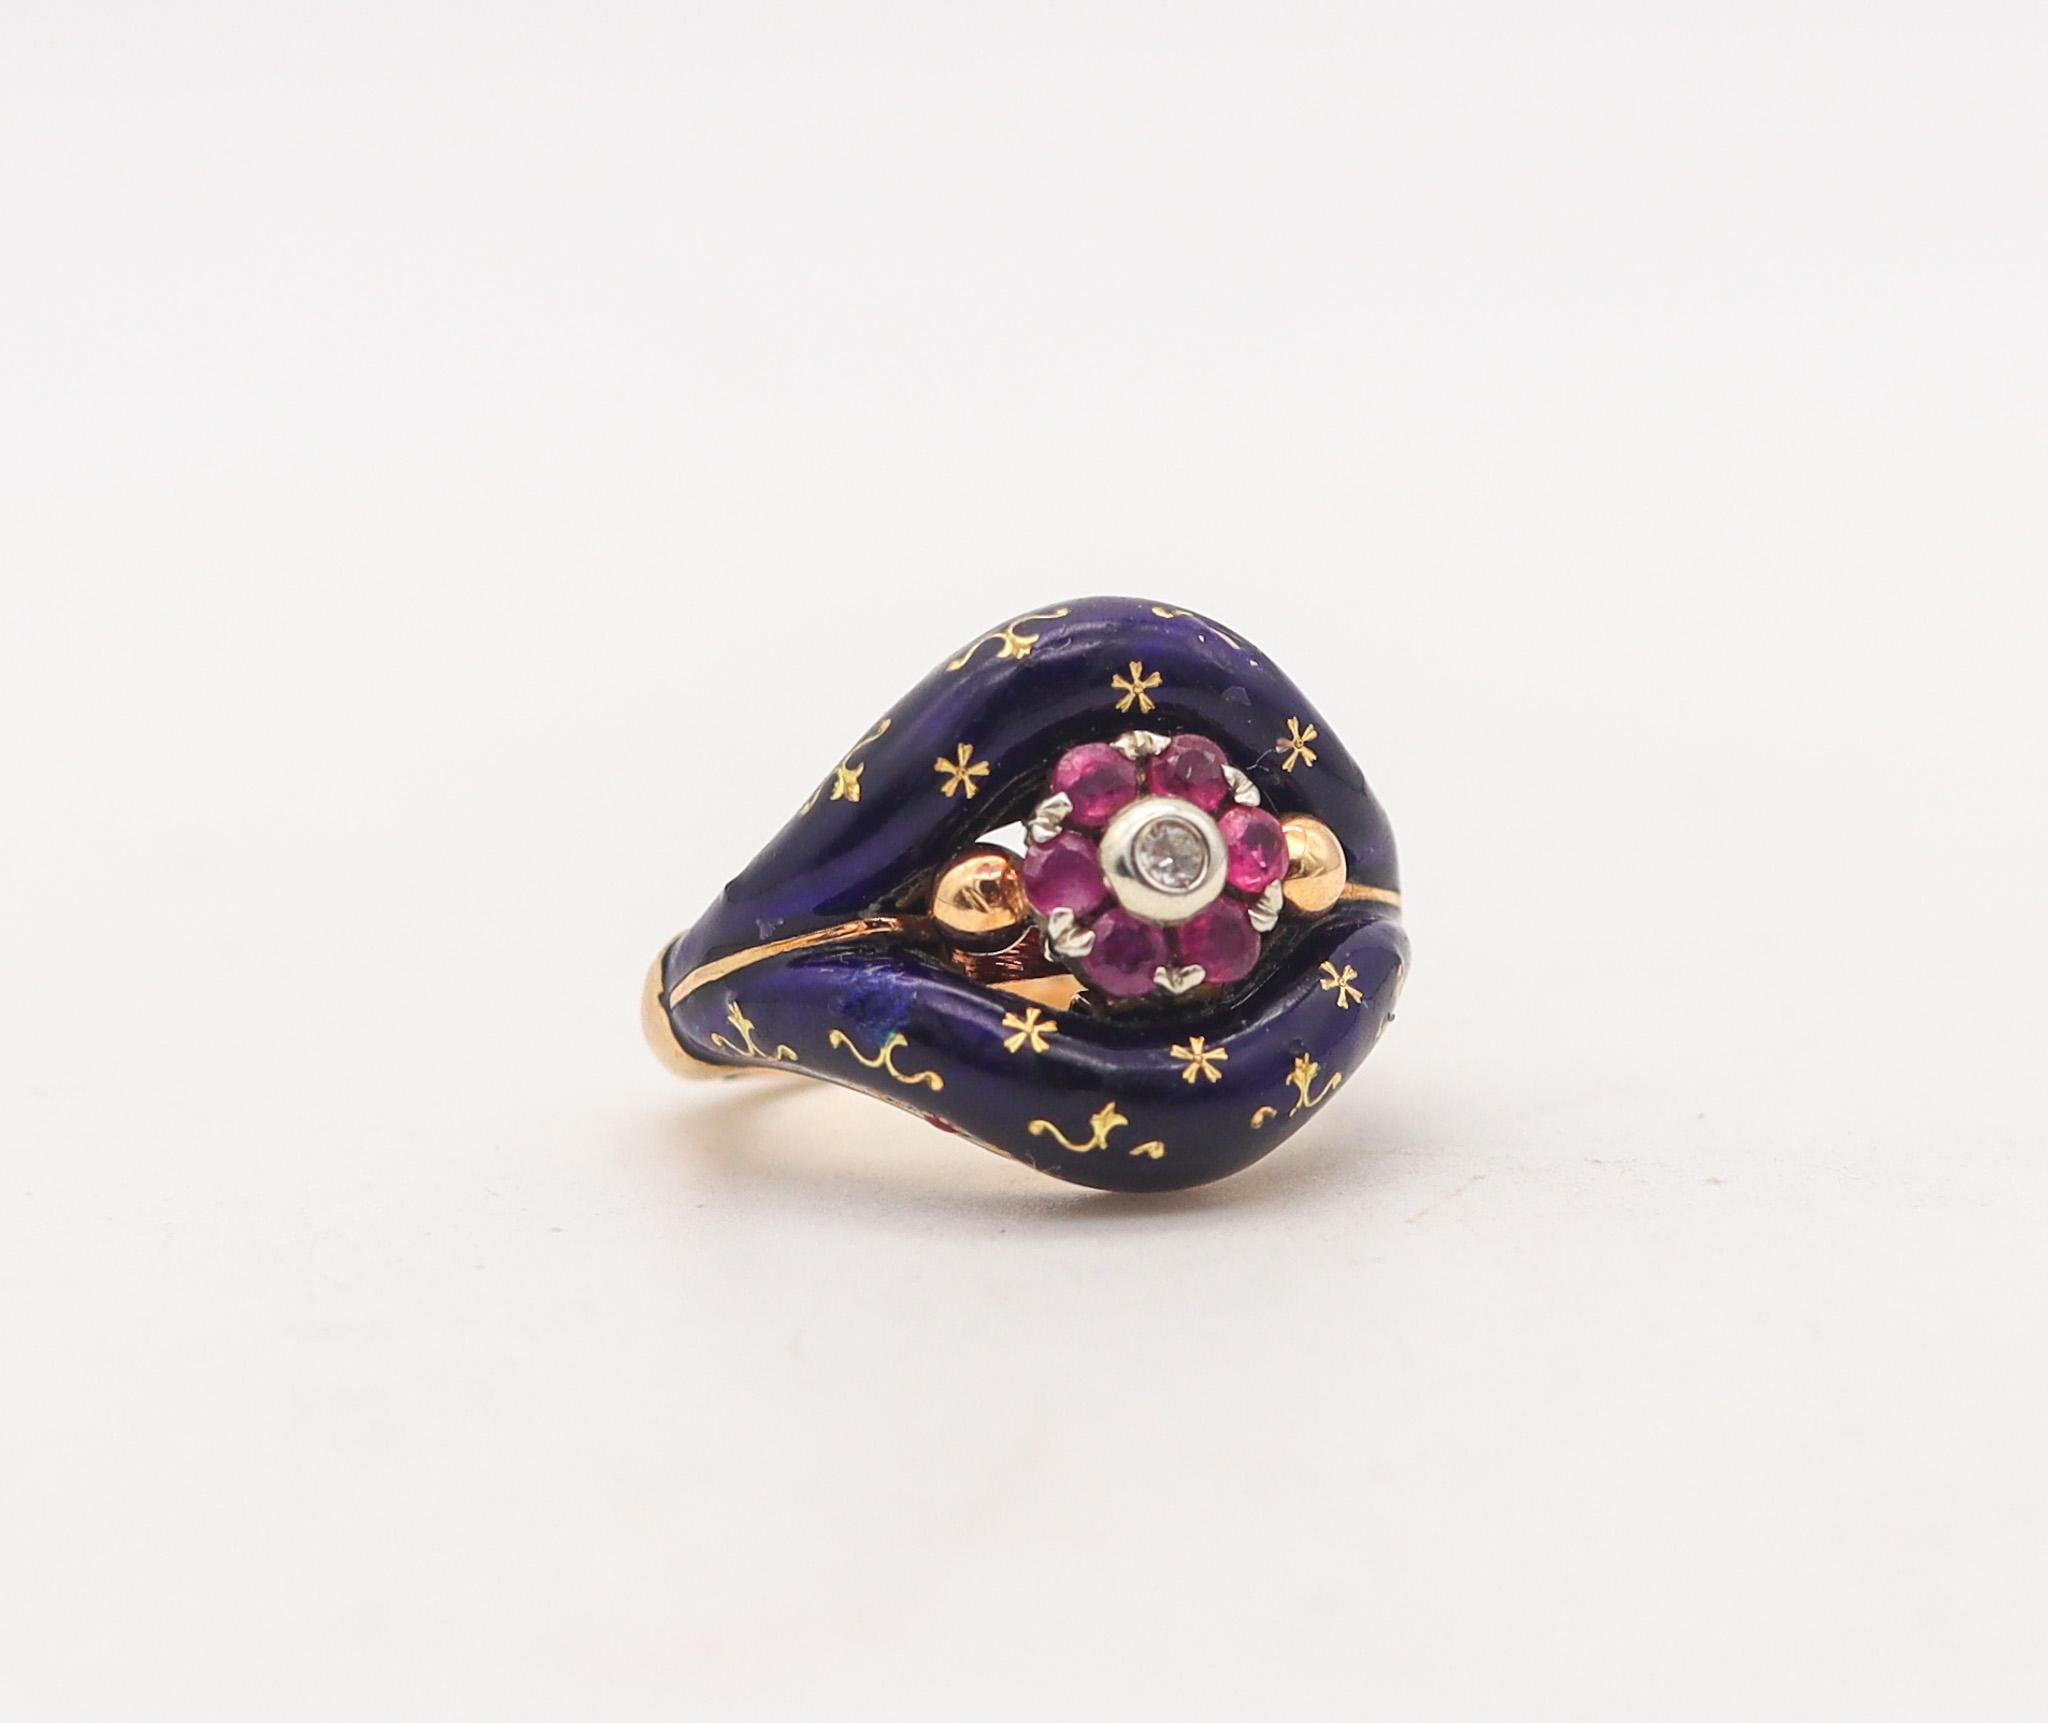 Viktorianischer emaillierter himmlischer Ring.

Schöner himmlischer Ring, der in England während des Viktorianischen Zeitalters (1837-1901) um 1880 hergestellt wurde. Dieser wunderschöne, farbenfrohe Ring wurde sorgfältig in massivem Gelbgold von 15